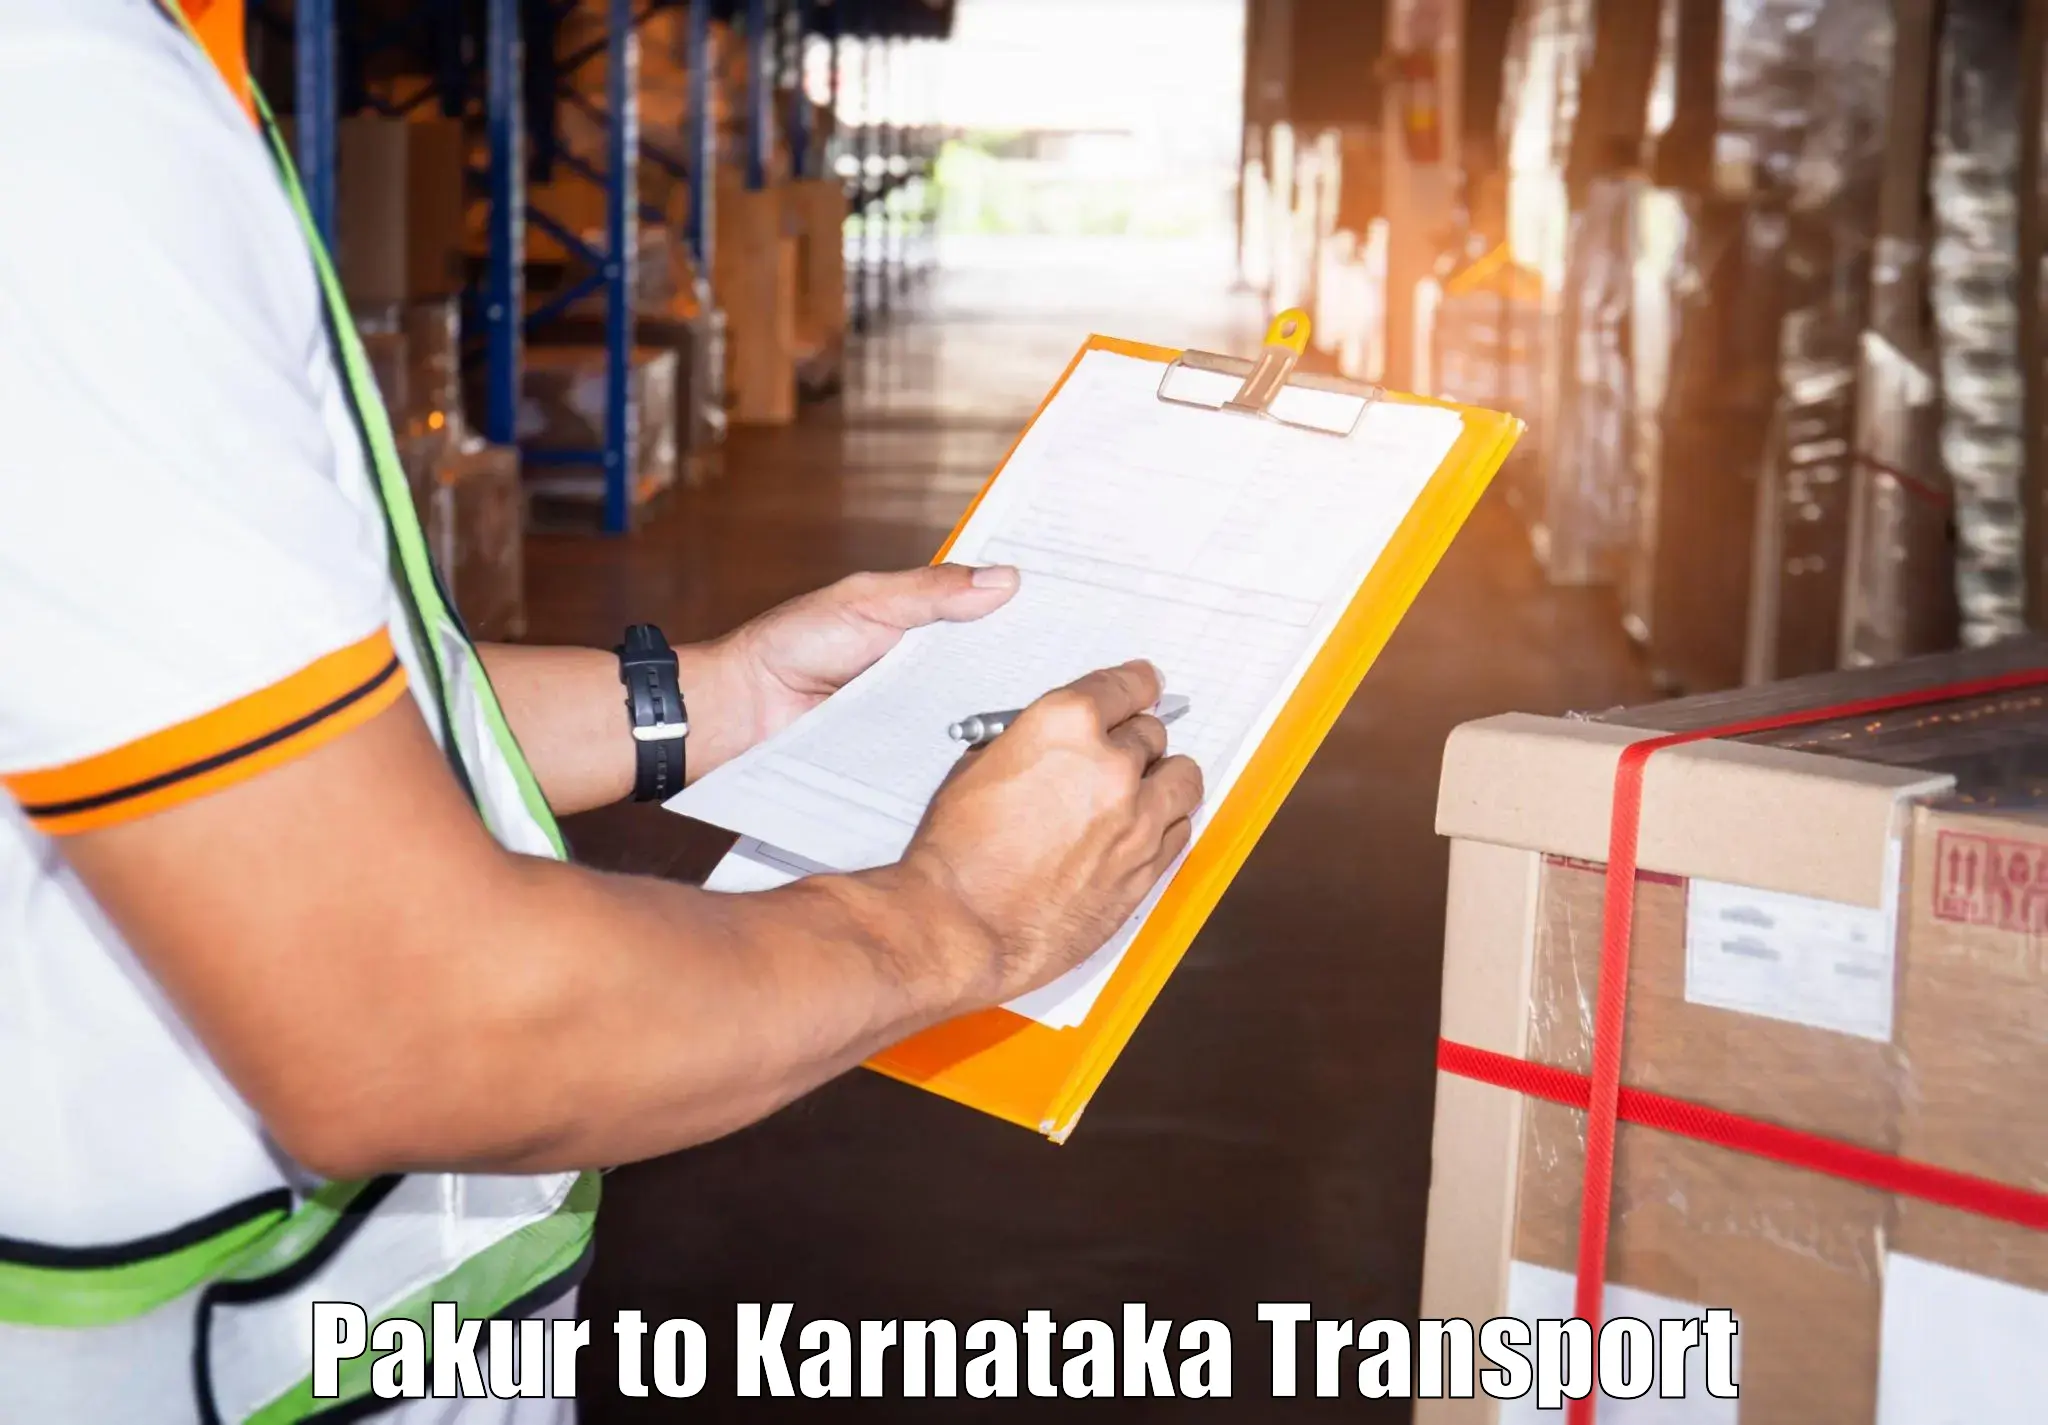 India truck logistics services Pakur to Srirangapatna